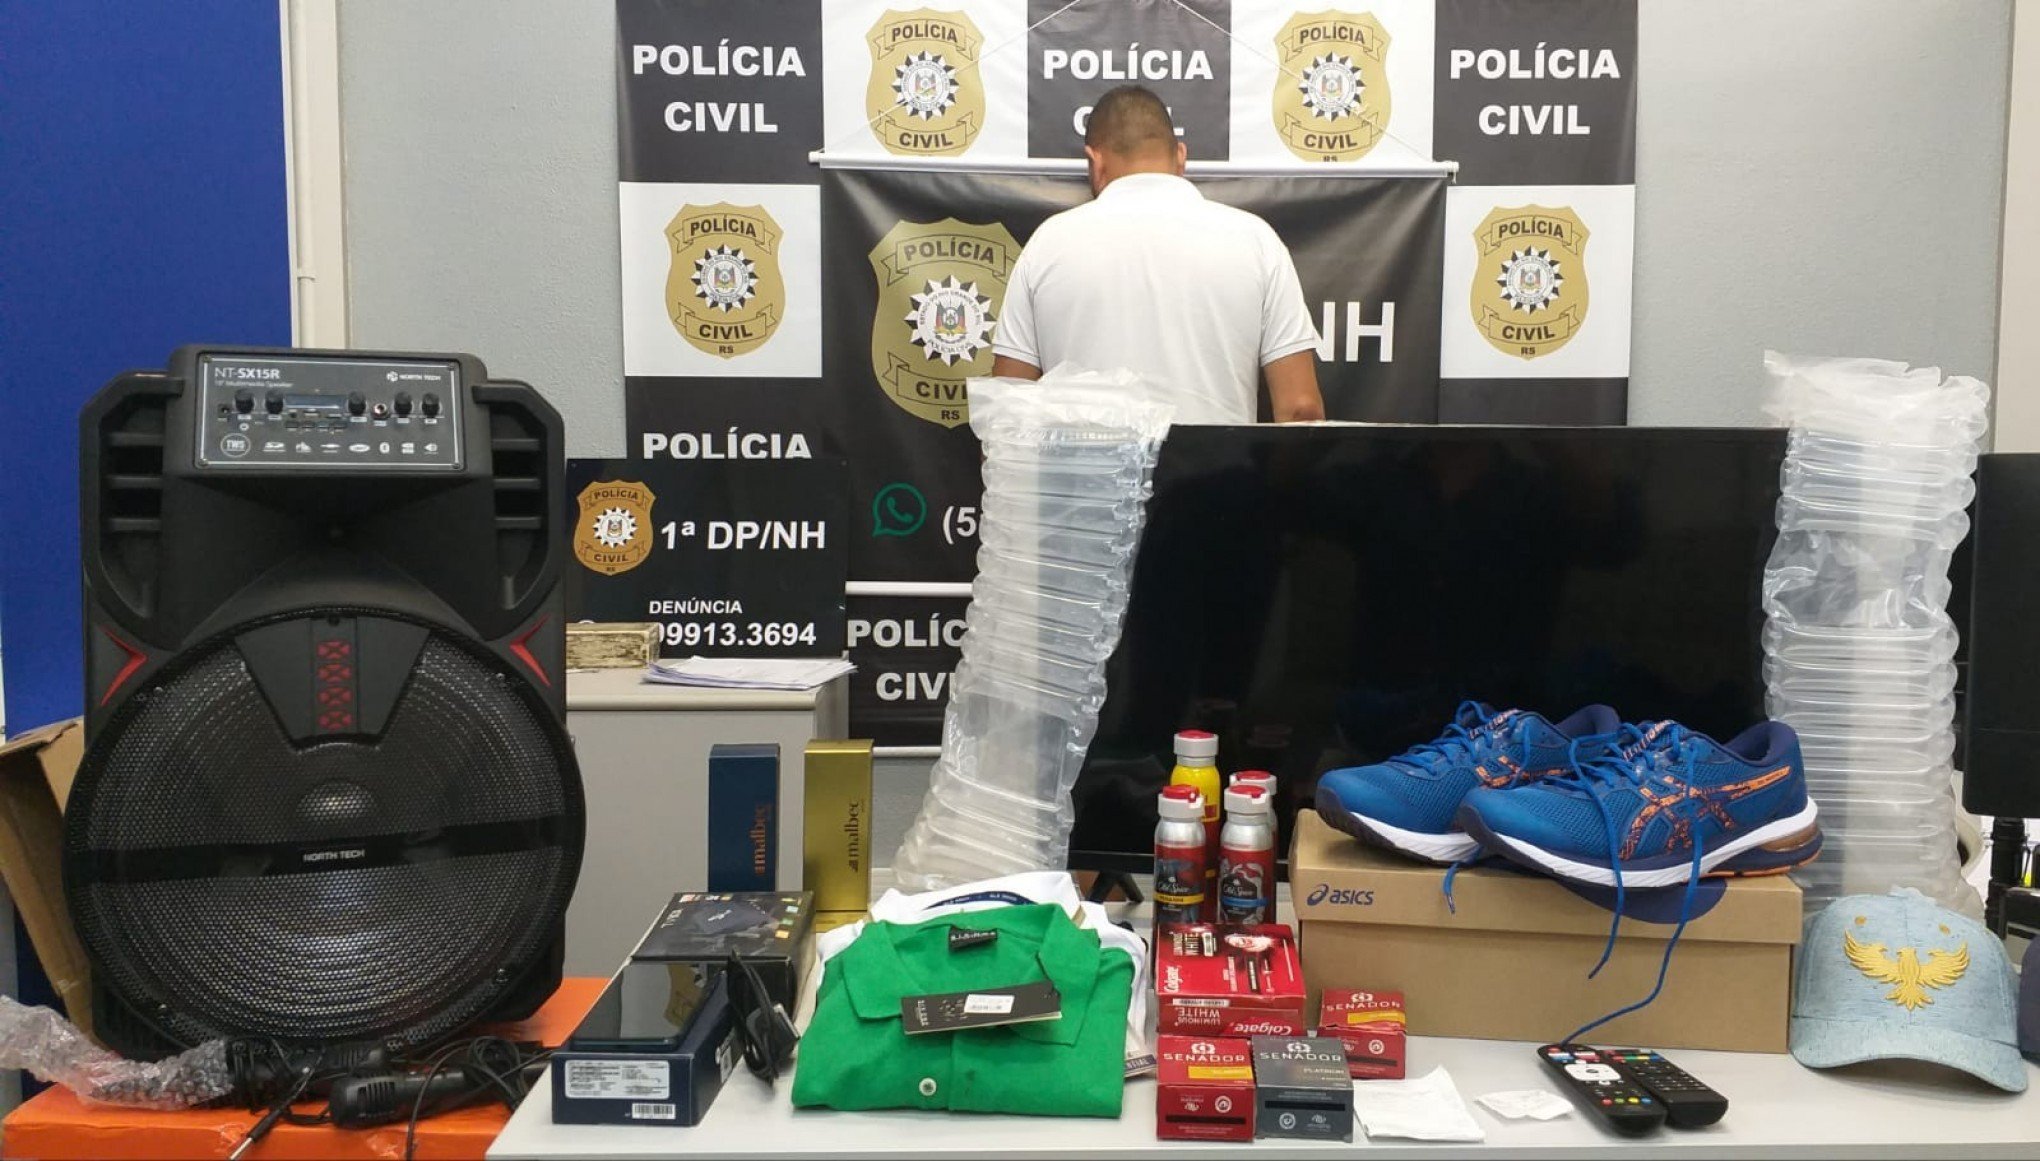 "Surpresa desagradável": Ladrão furta cartões de turista argentino, faz compras e é preso em Novo Hamburgo